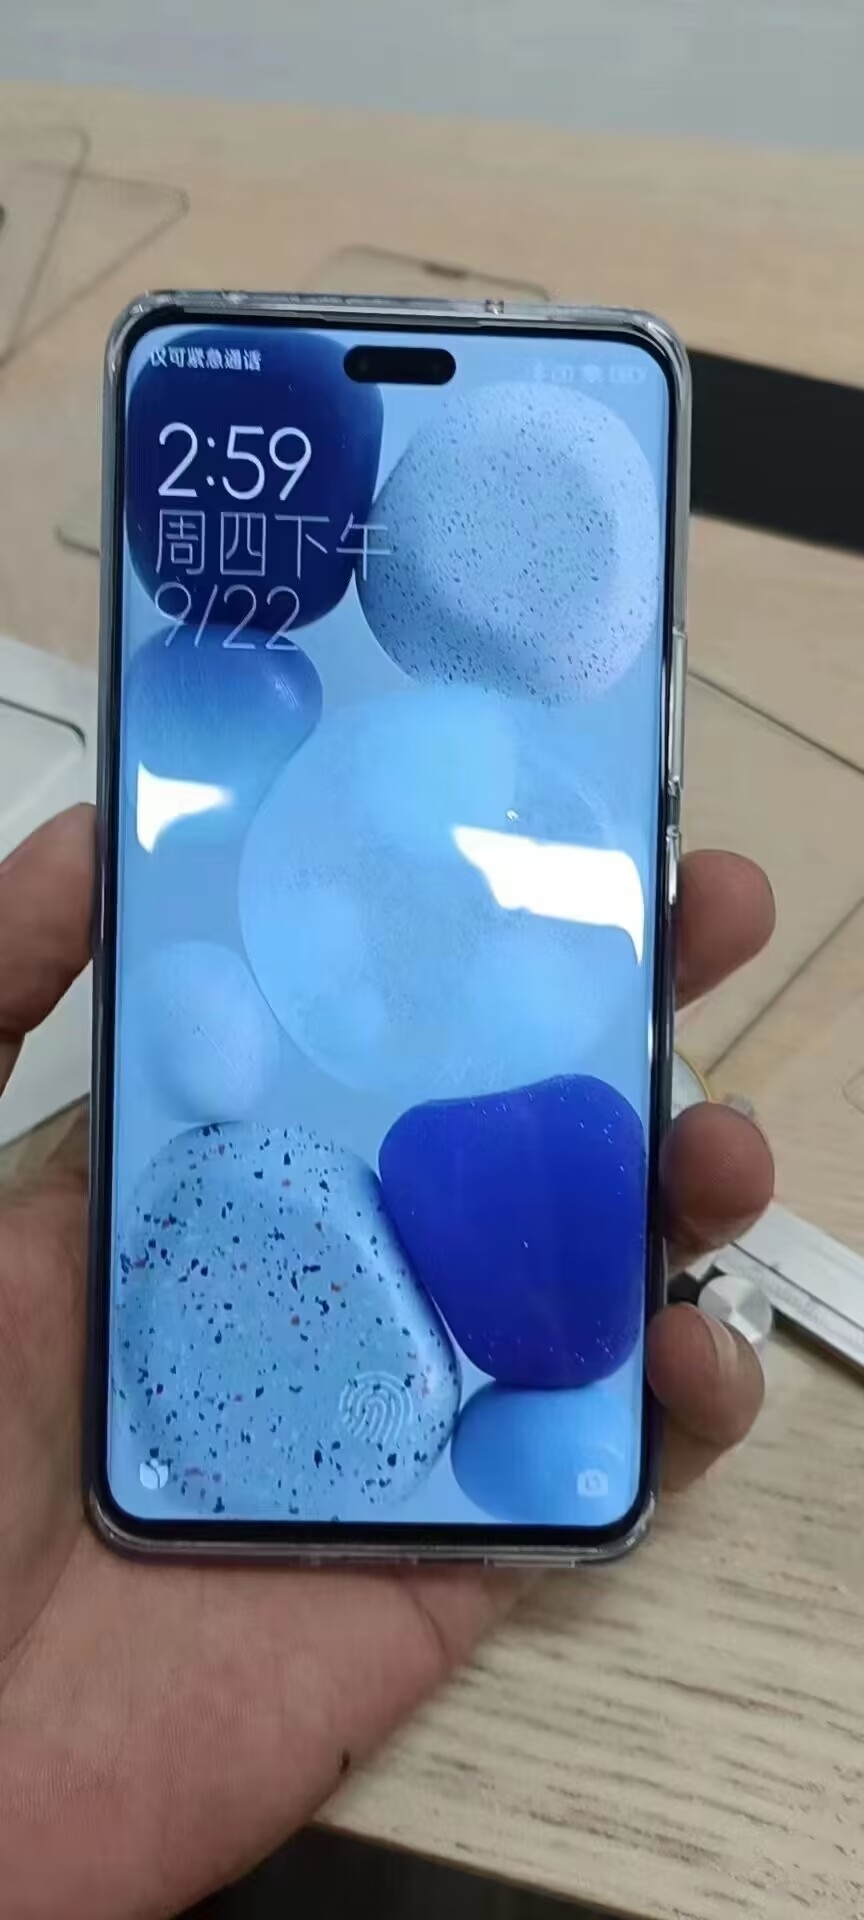 Xiaomi CIVI 2